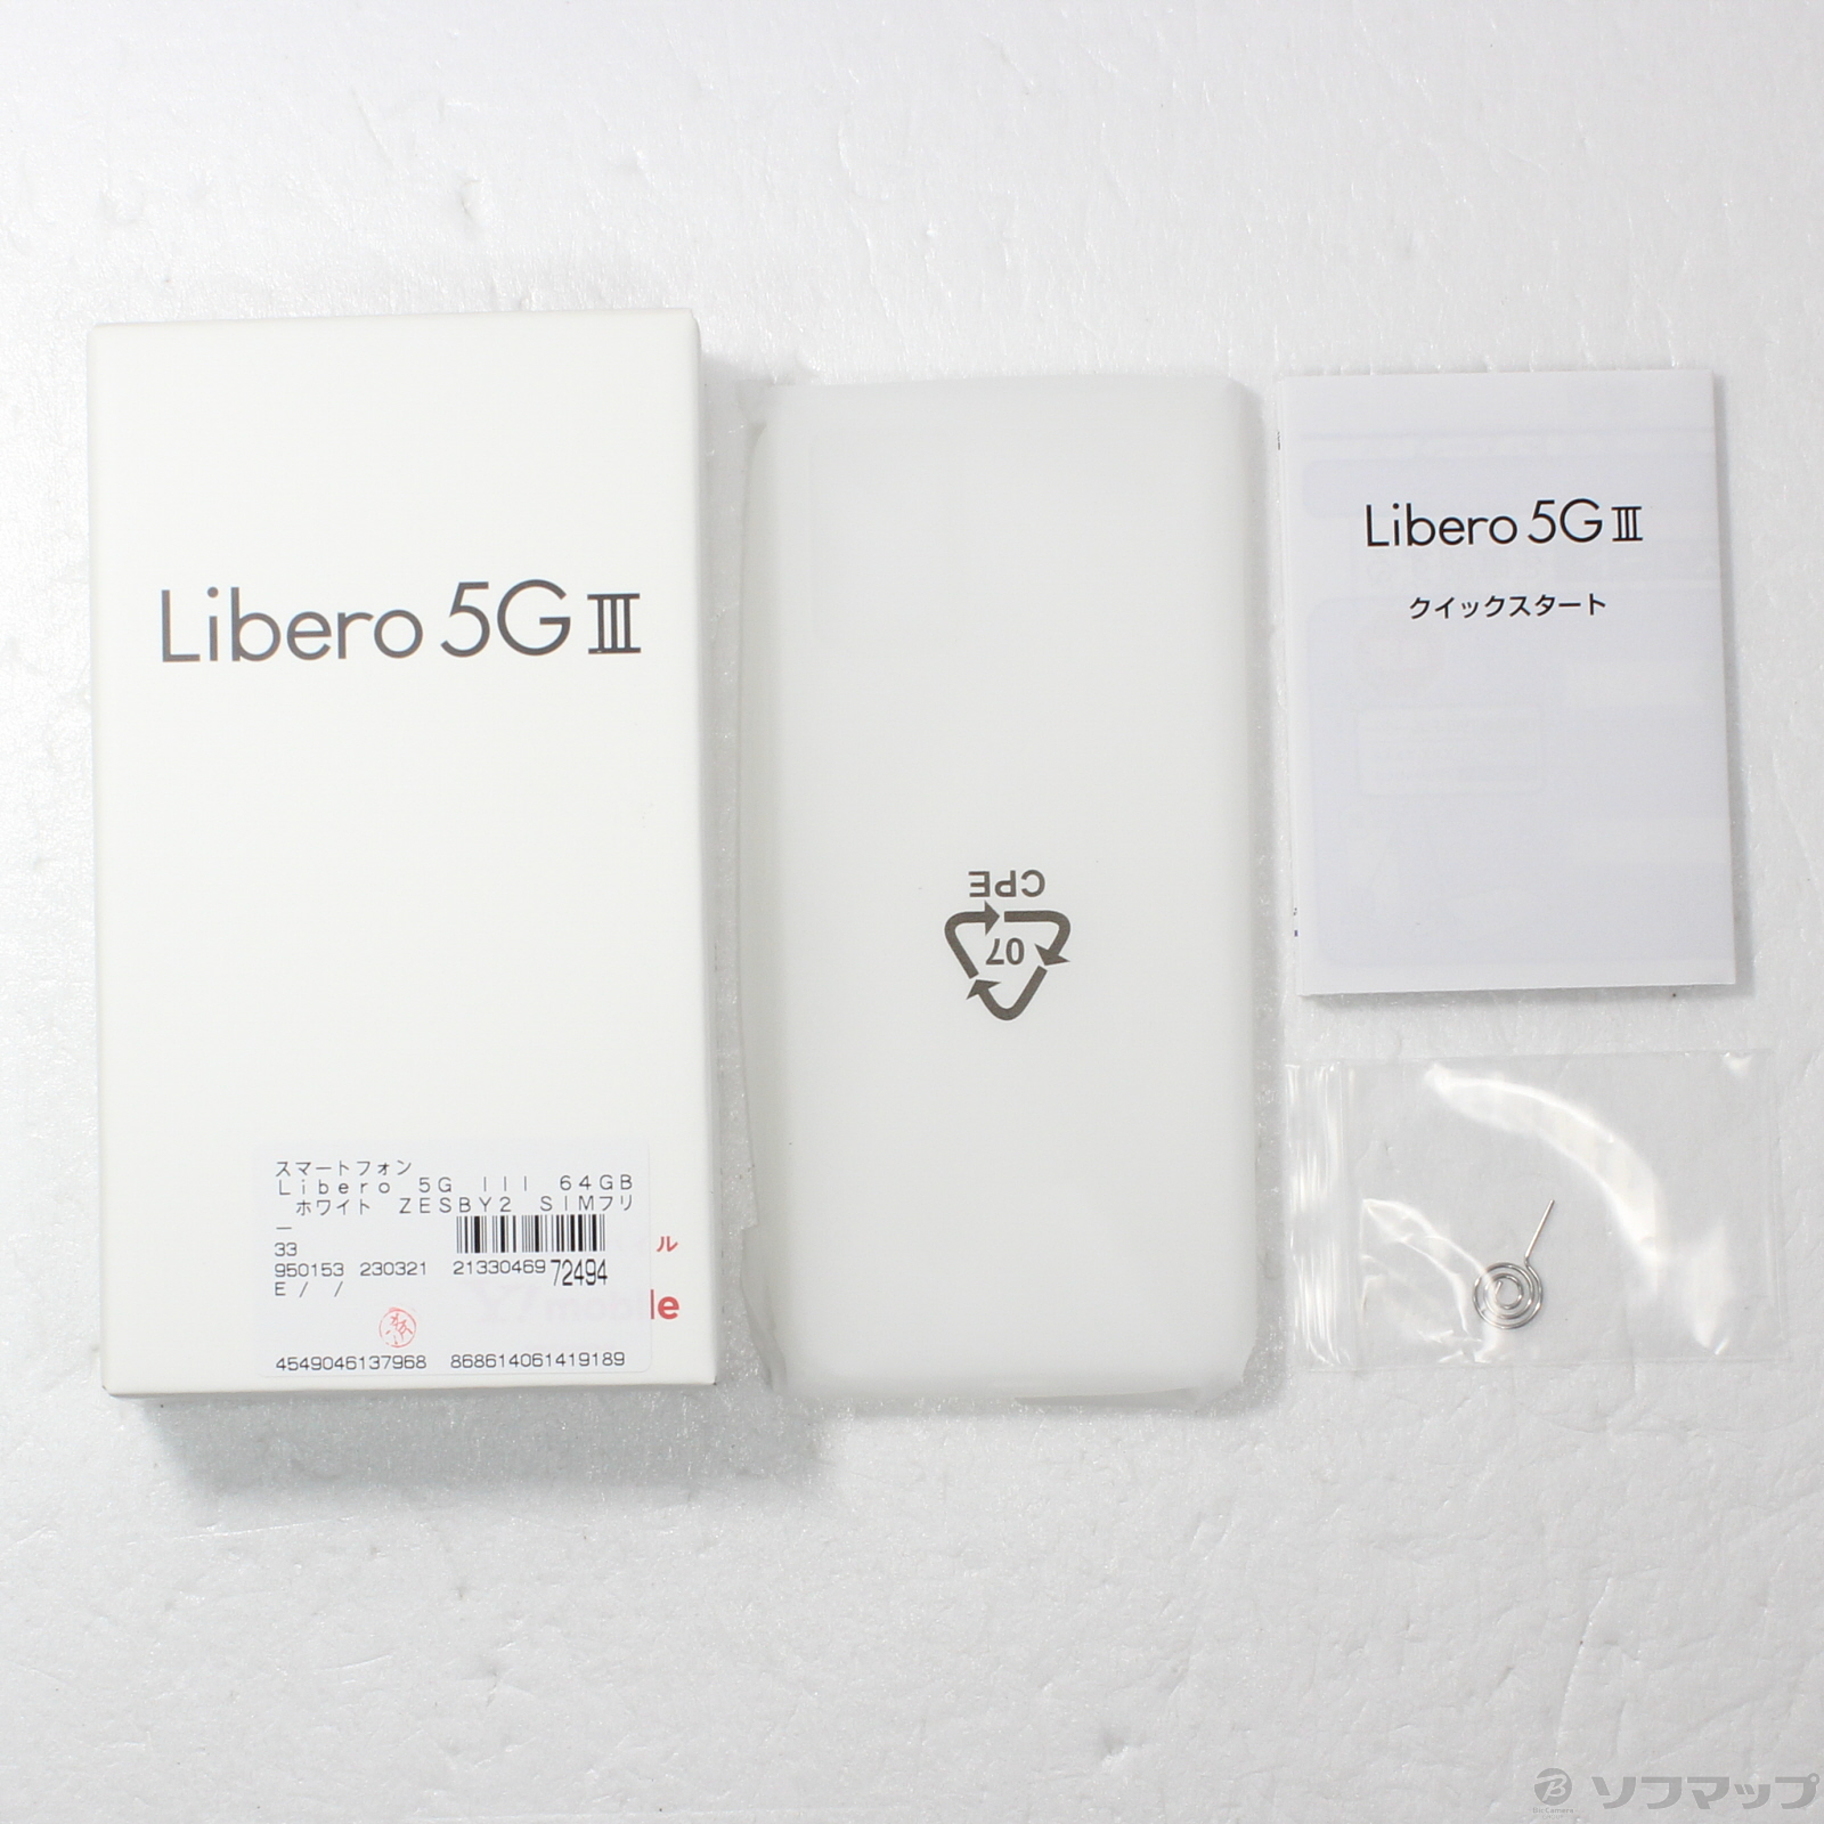 中古】Libero 5G III 64GB ホワイト ZESBY2 SIMフリー [2133046972494 ...